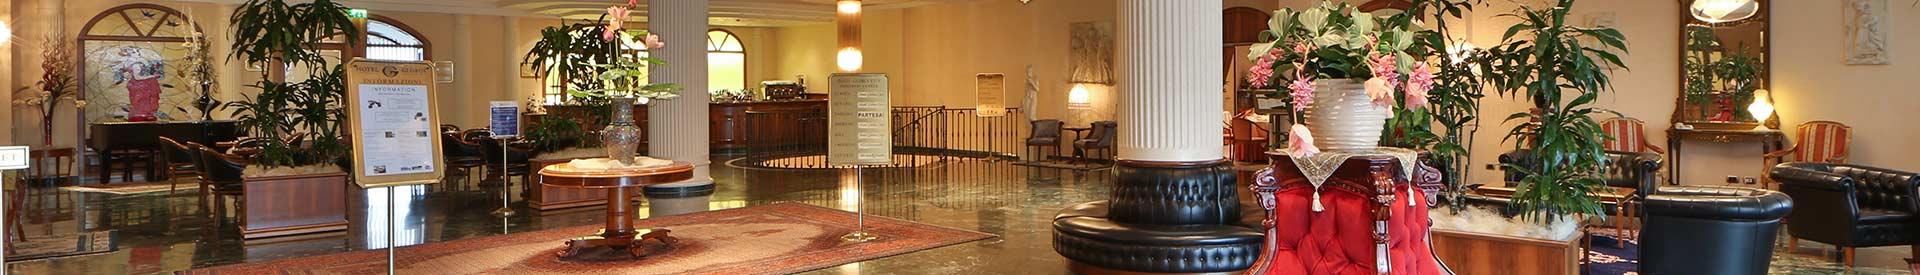  Cerchi un hotel per il tuo soggiorno a Forlì (FC)? Prenota al Best Western Hotel Globus City